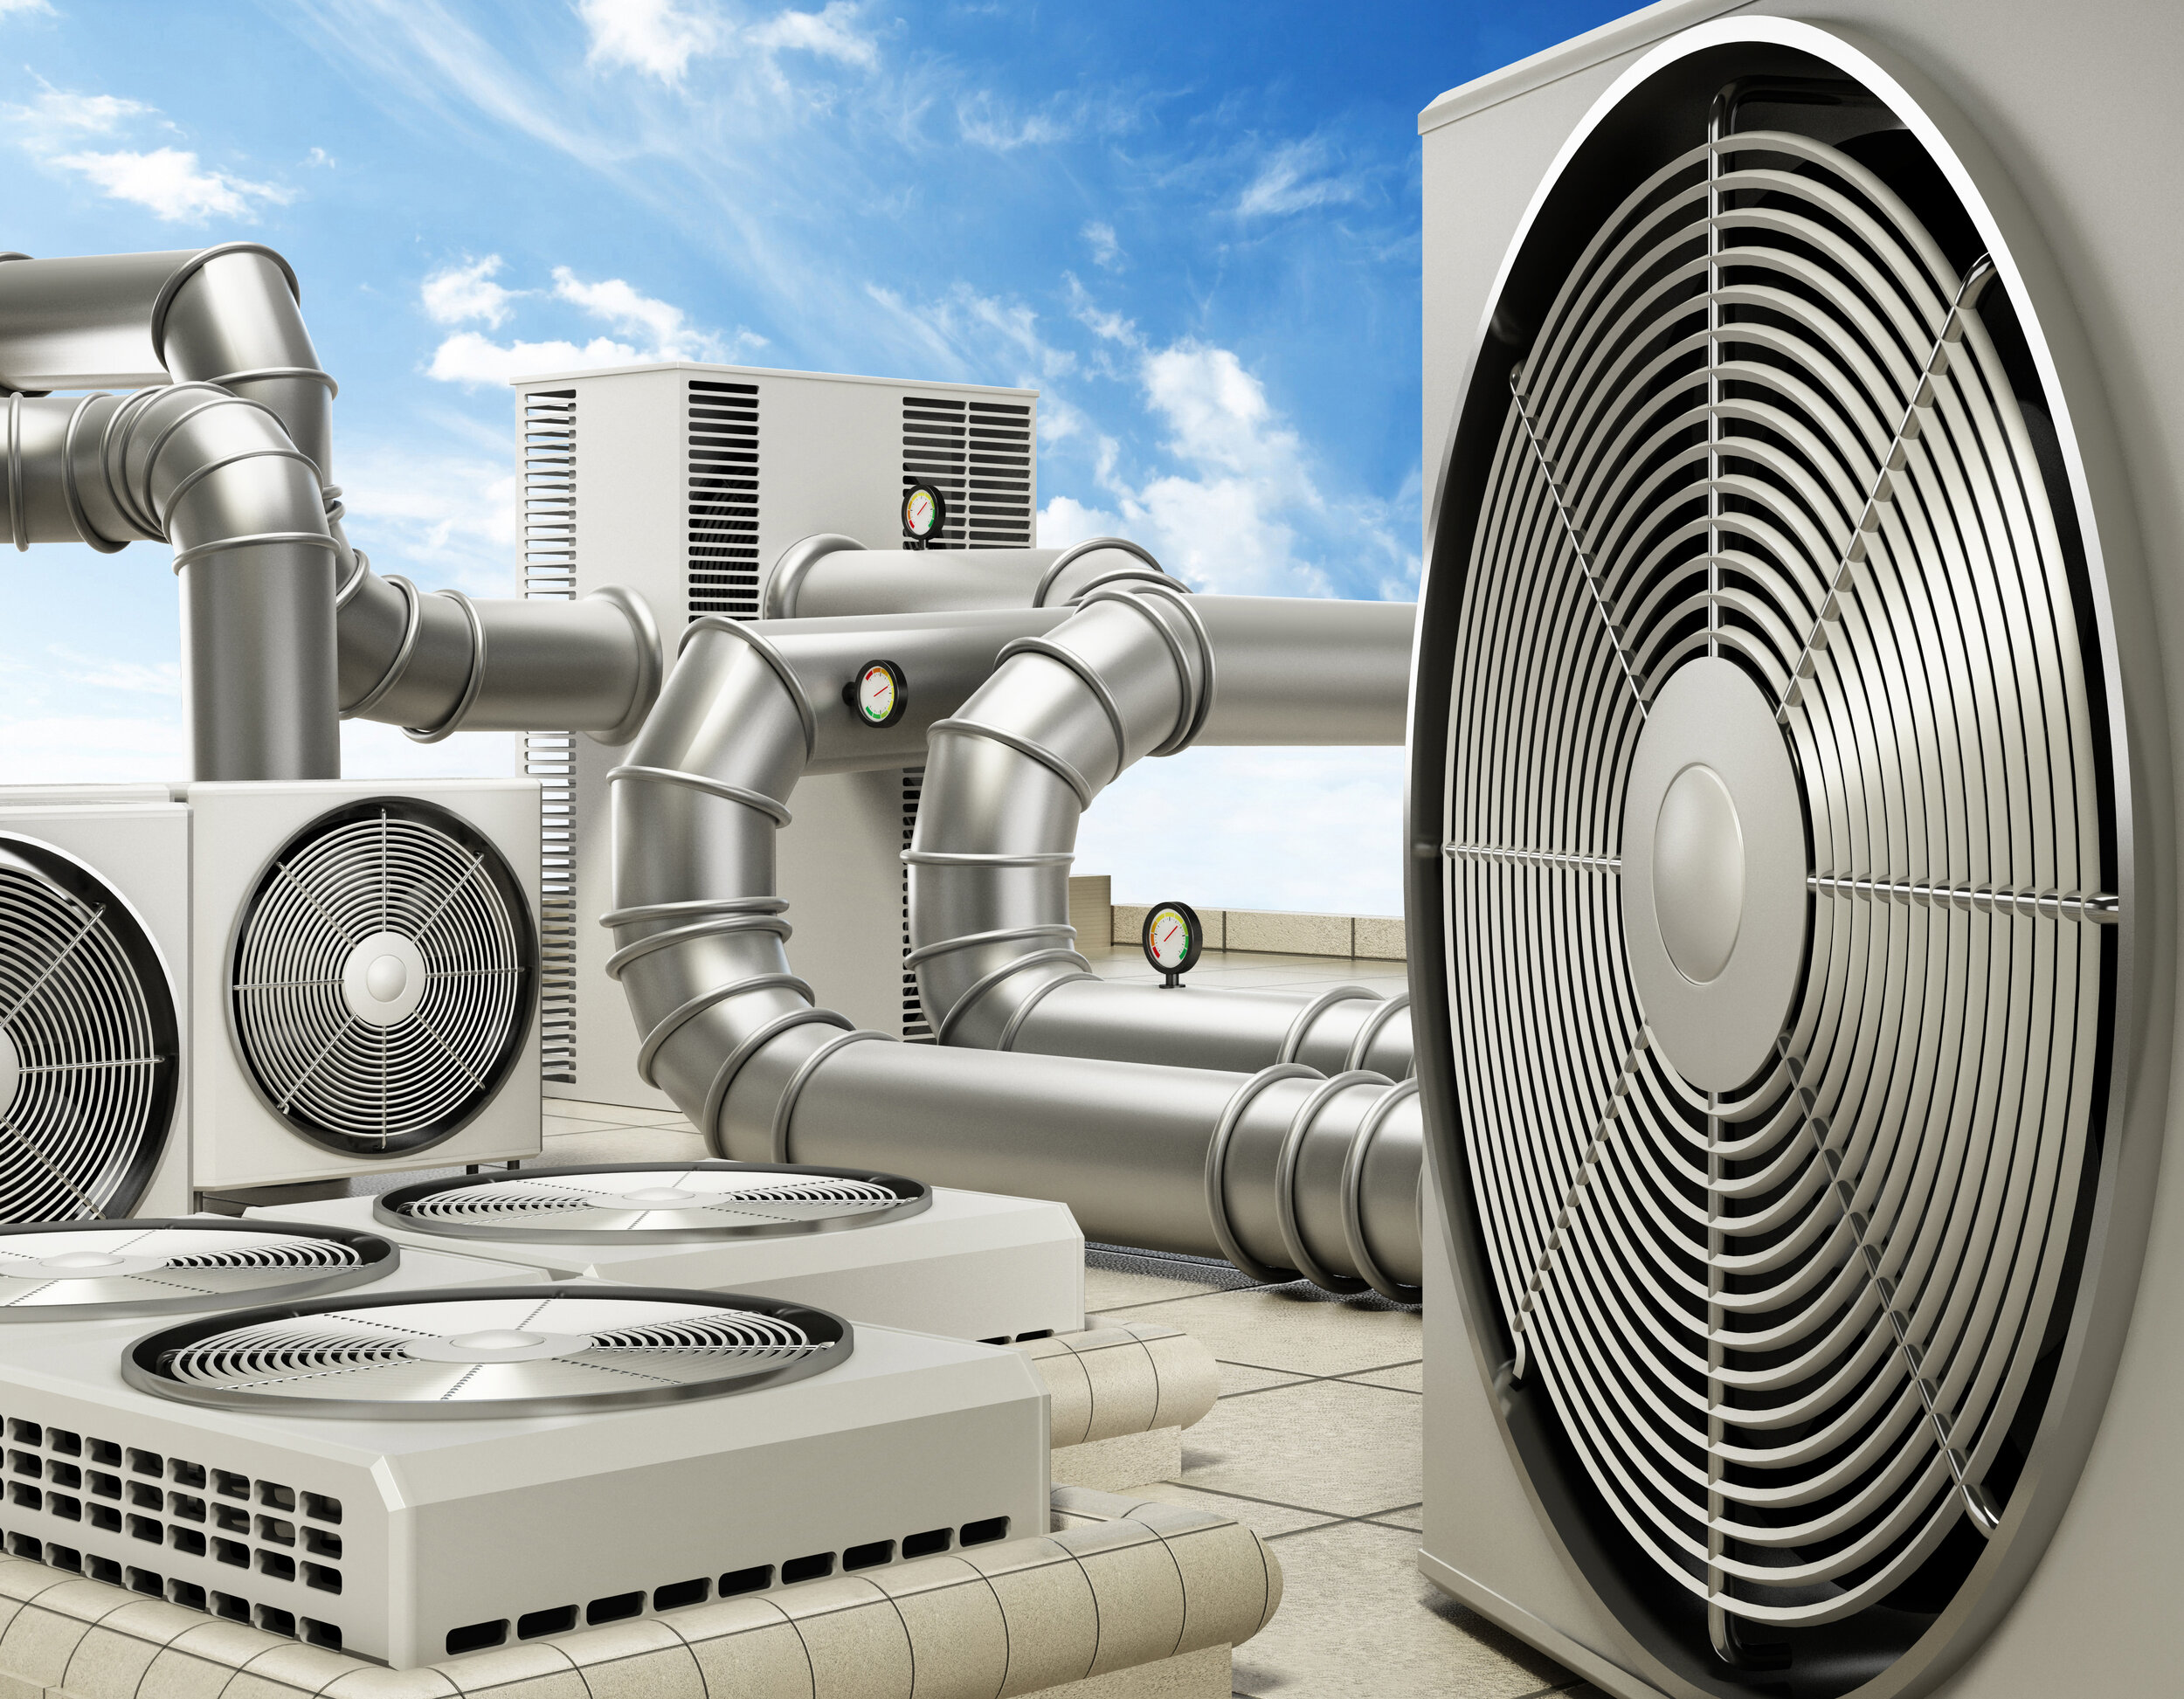 Сайт вентиляционных. Система вентиляции Air Ventilation. HVAC система вентиляции и кондиционирования. Система VRF кондиционирования воздуха. Отопление и кондиционирование.